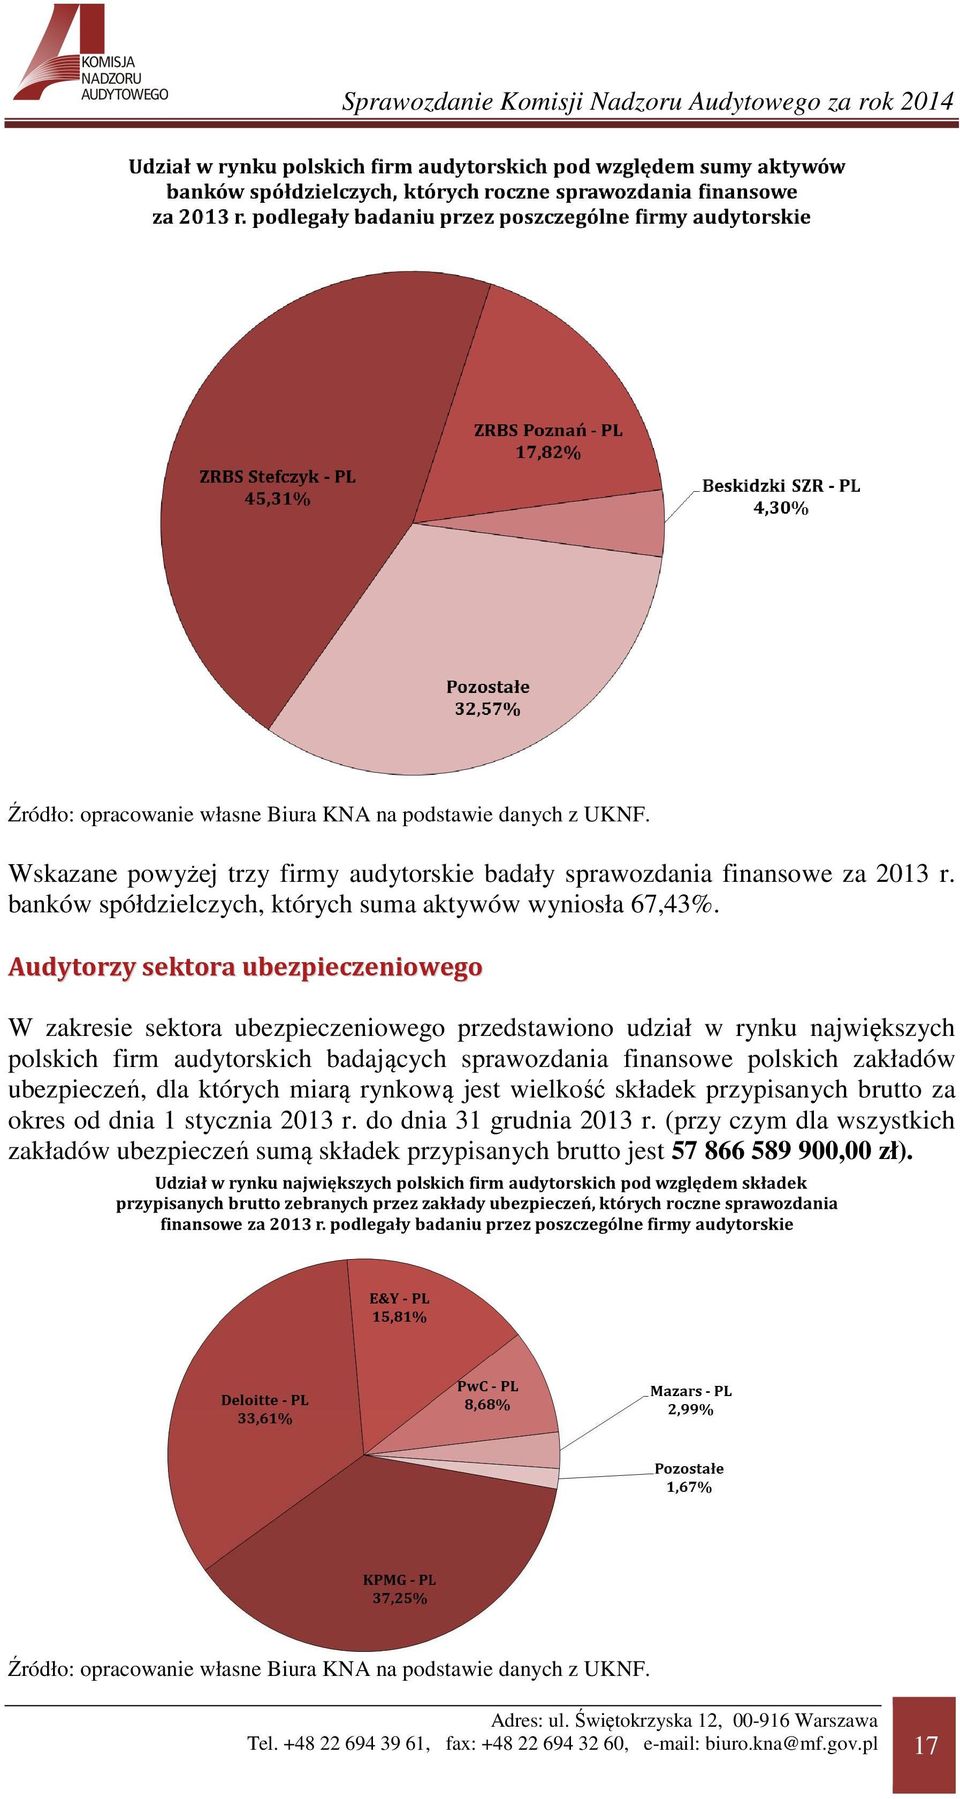 Audytorzy sektora ubezpieczeniowego W zakresie sektora ubezpieczeniowego przedstawiono udział w rynku największych polskich firm audytorskich badających sprawozdania finansowe polskich zakładów